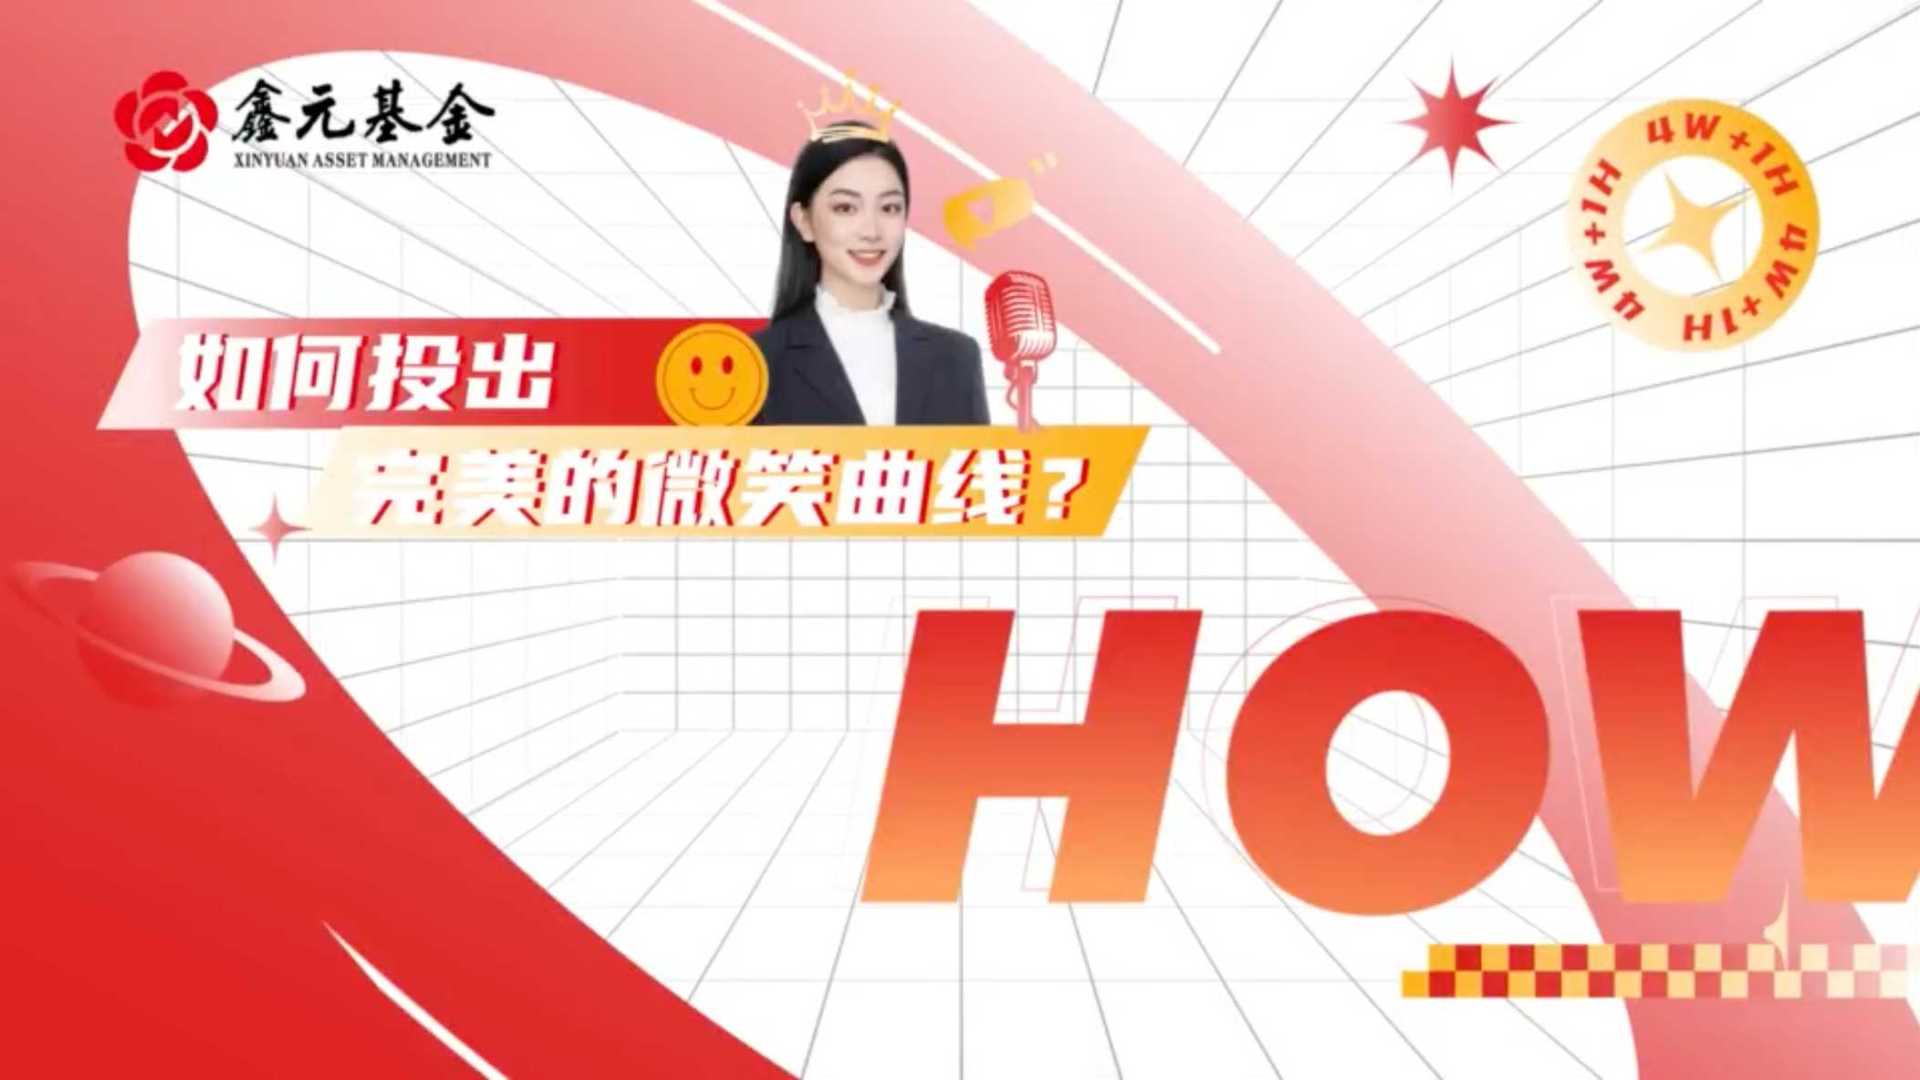 鑫元基金-4W1H定投系列创意视频-第五期